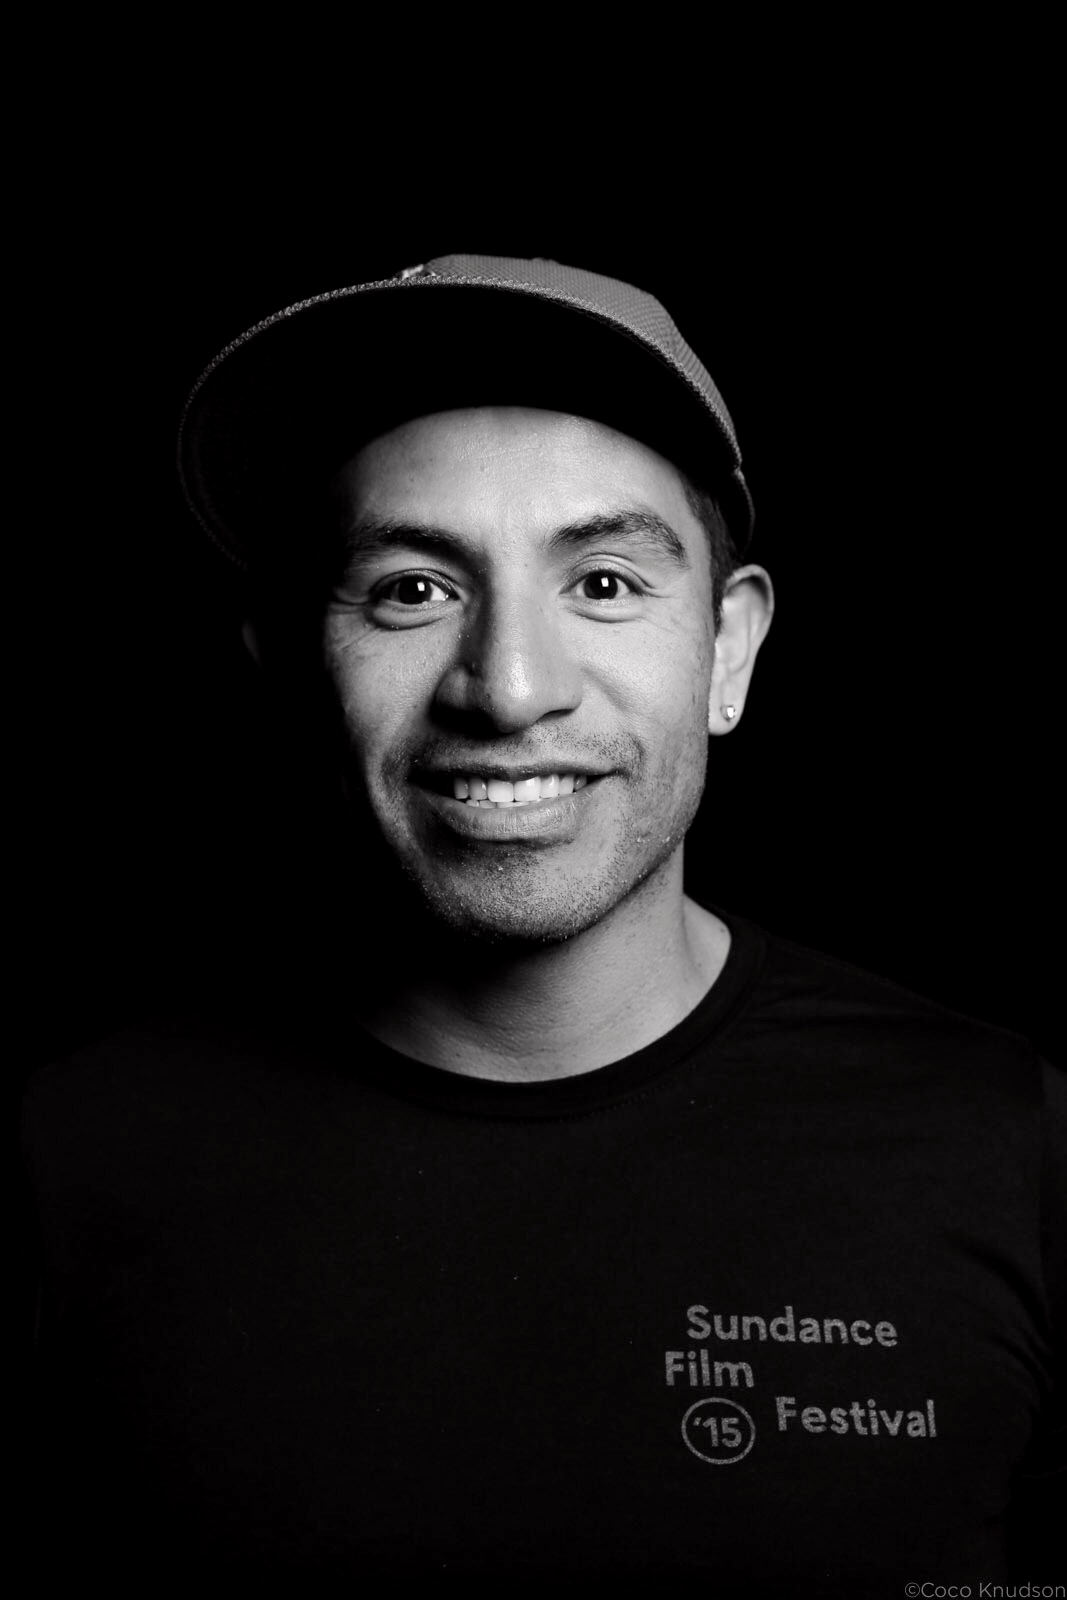 Actor Eloy Mendez attending the 2015 Sundance Film Festival.